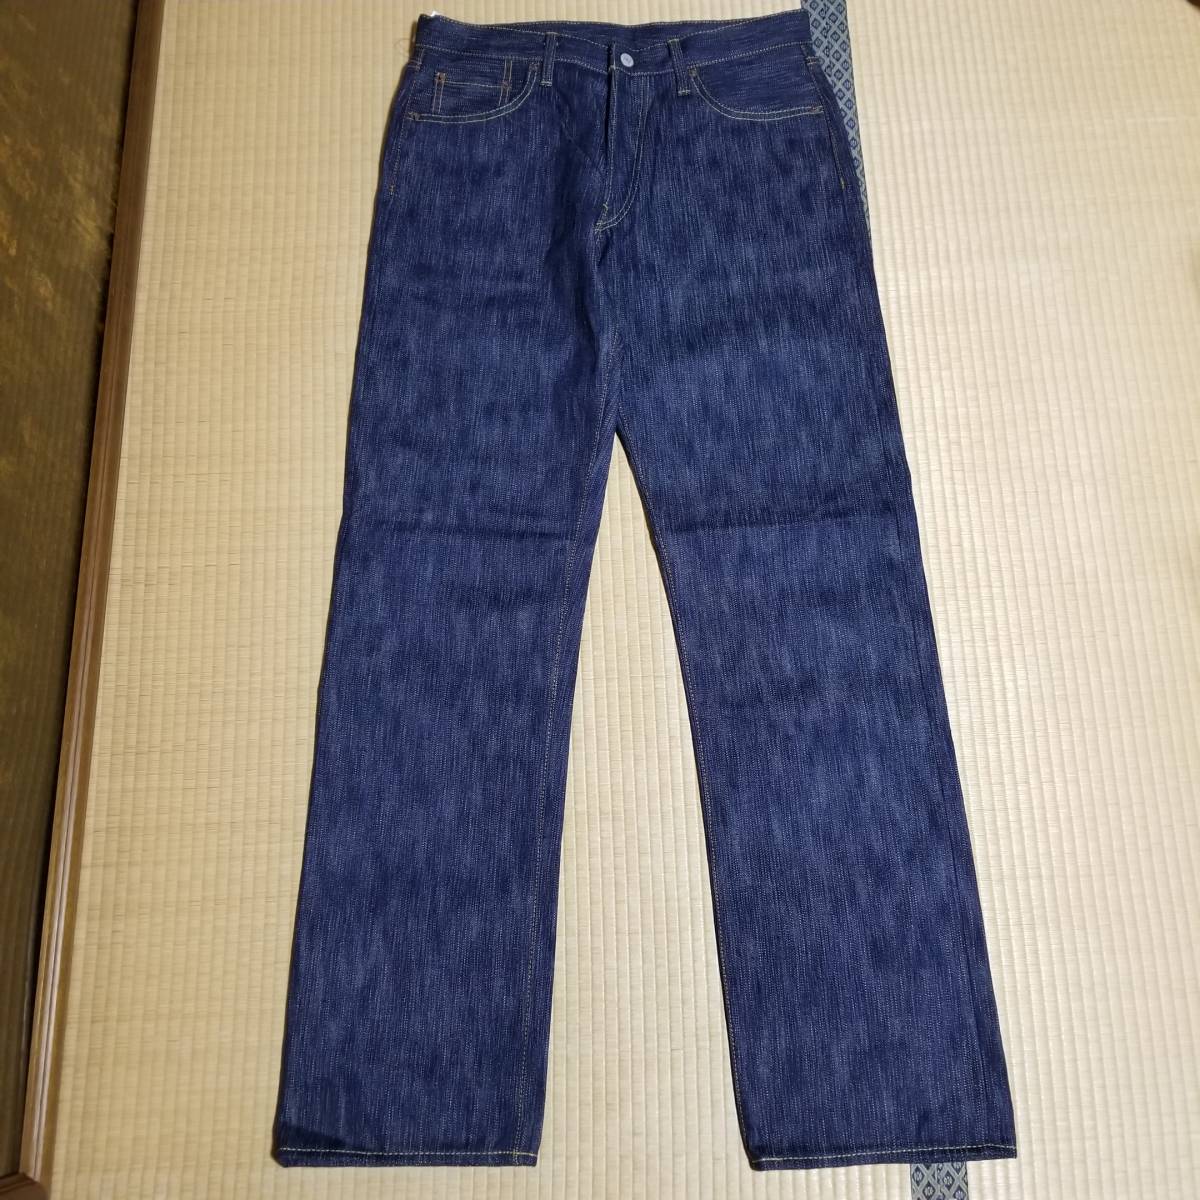  новый товар правильный индиго джинсы W32 16oz натуральный индиго книга@ индиго Denim s Rav индиго окраска Denim jeans Tokushima Natural Indigo Hand Dyed JAPAN